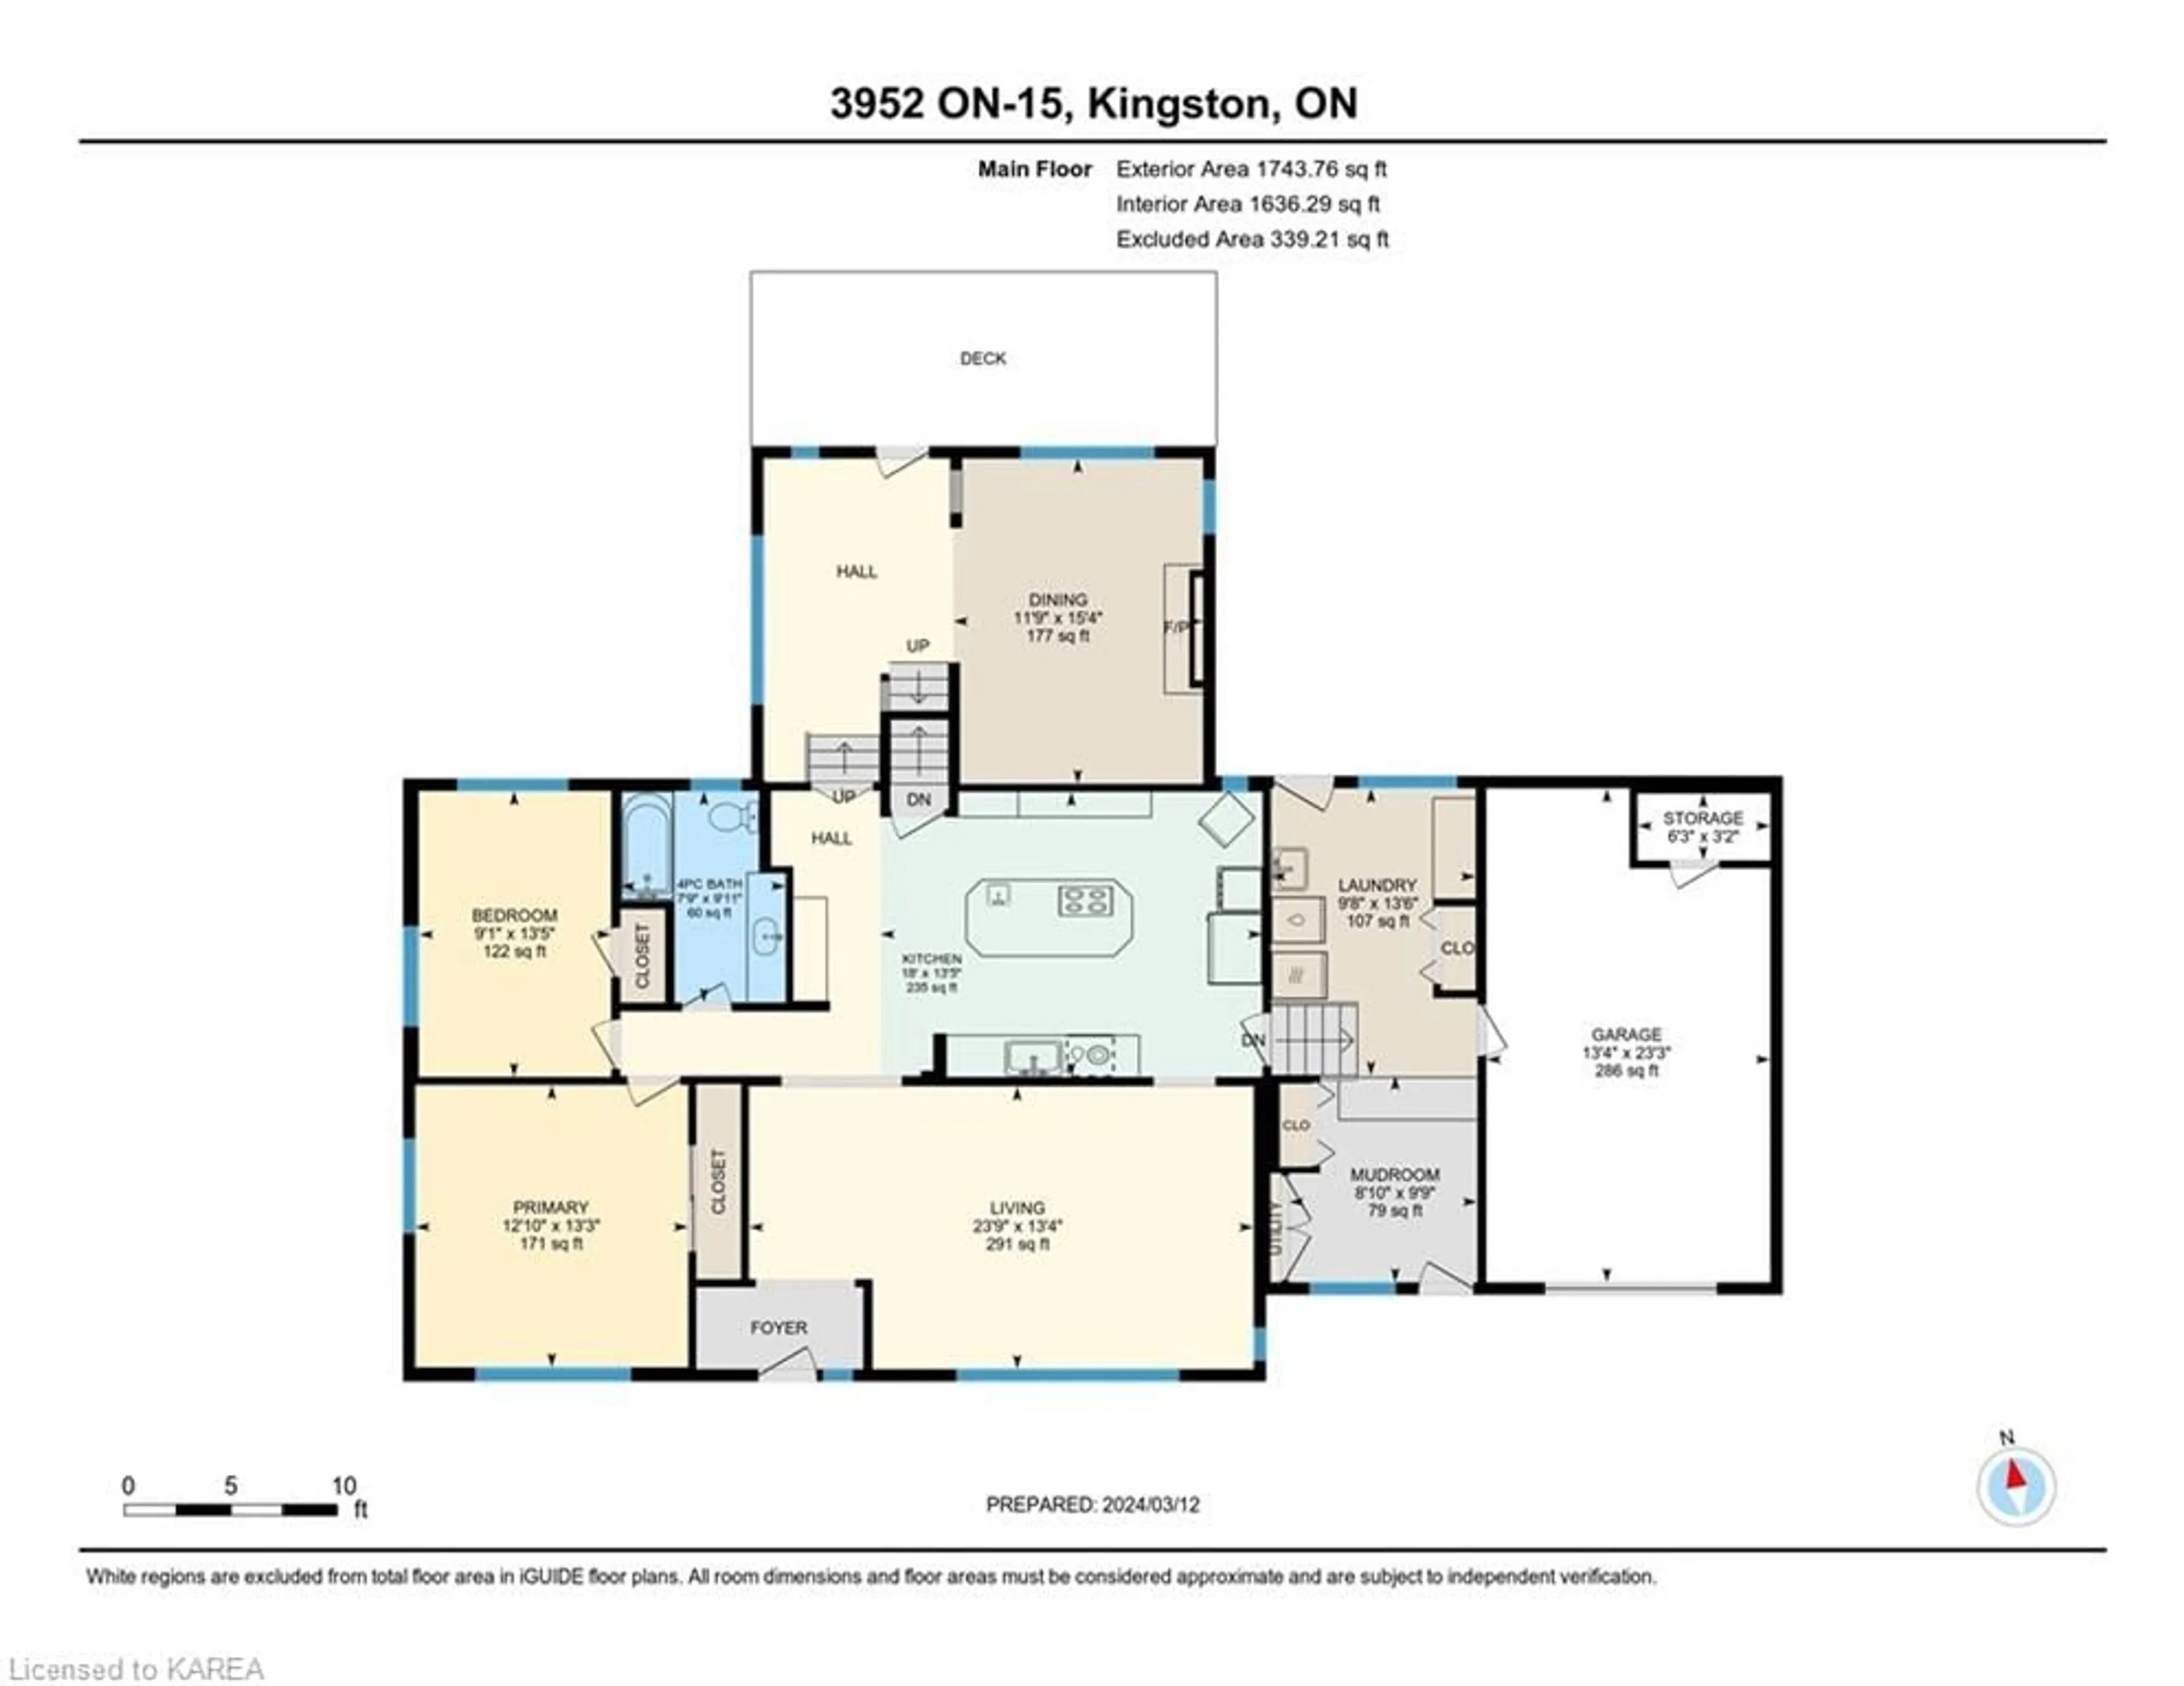 Floor plan for 3952 Highway 15, Kingston Ontario K0H 1Y0